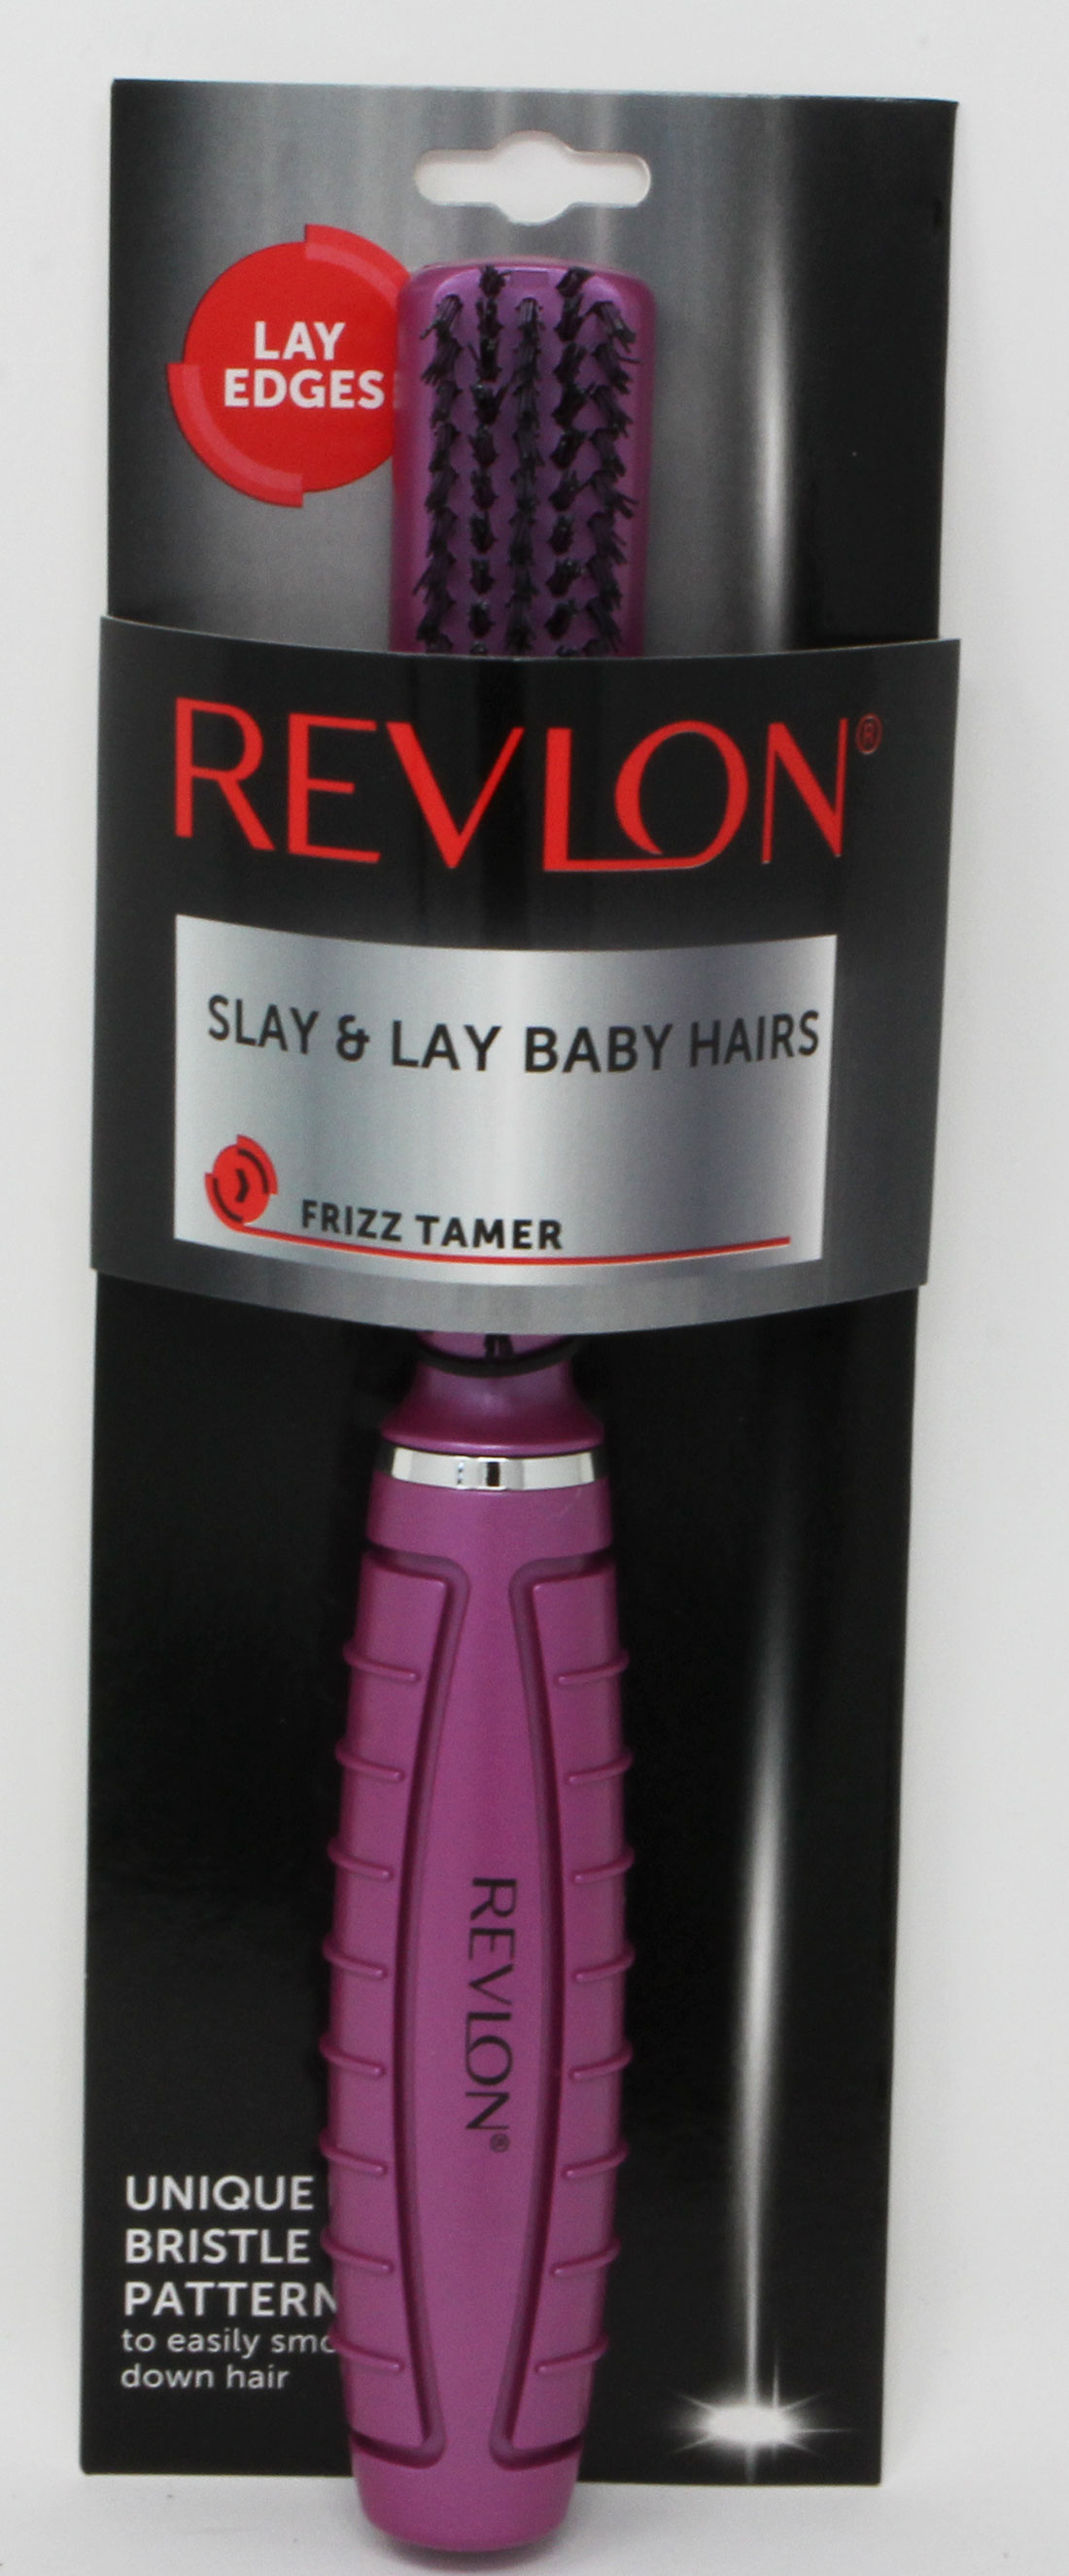 REVLON slay & lay baby hairs